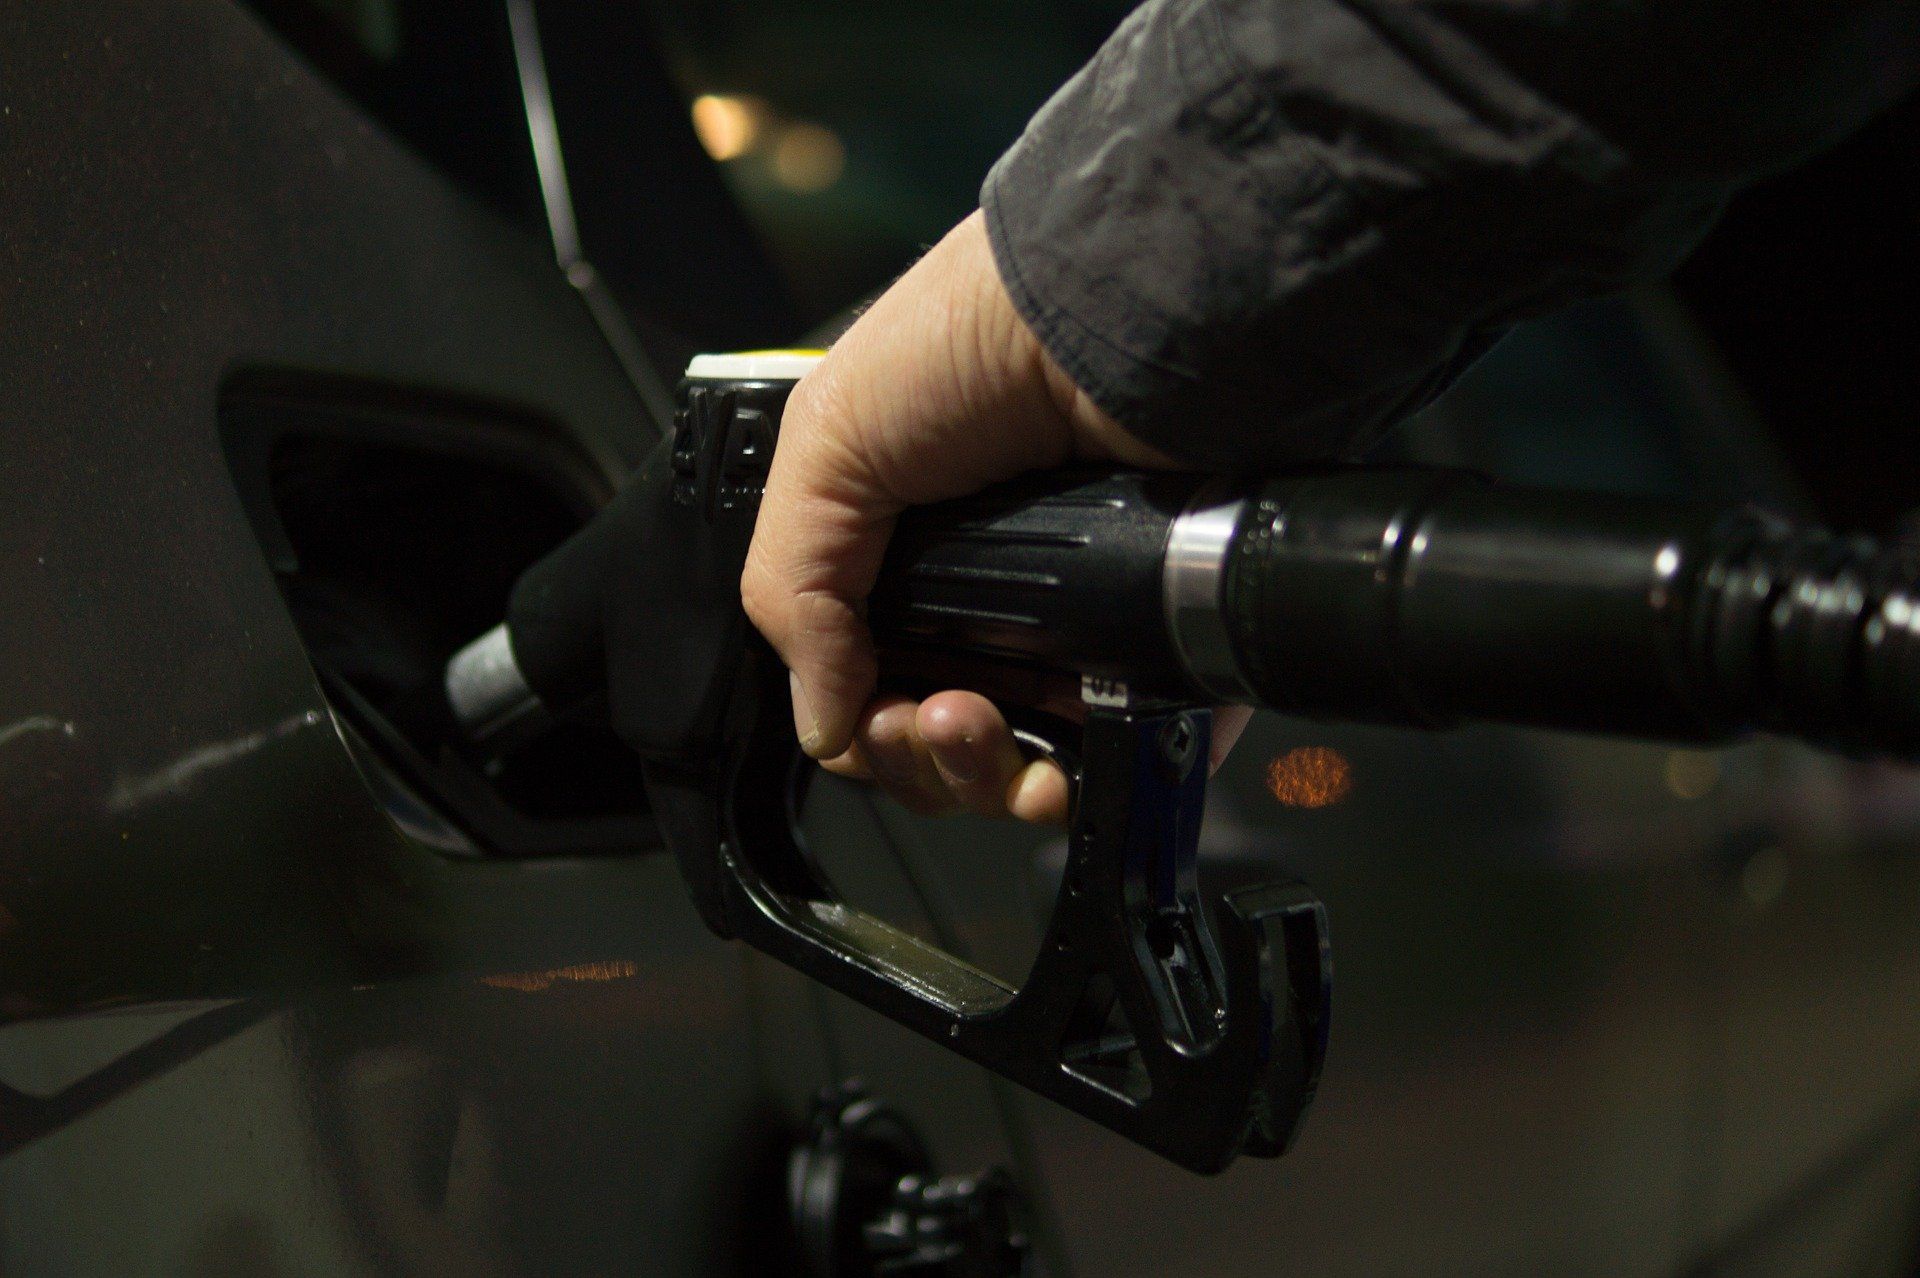 Fuel price June 3, 2022: Petrol Rs 96.72, diesel Rs 89.62 in Delhi